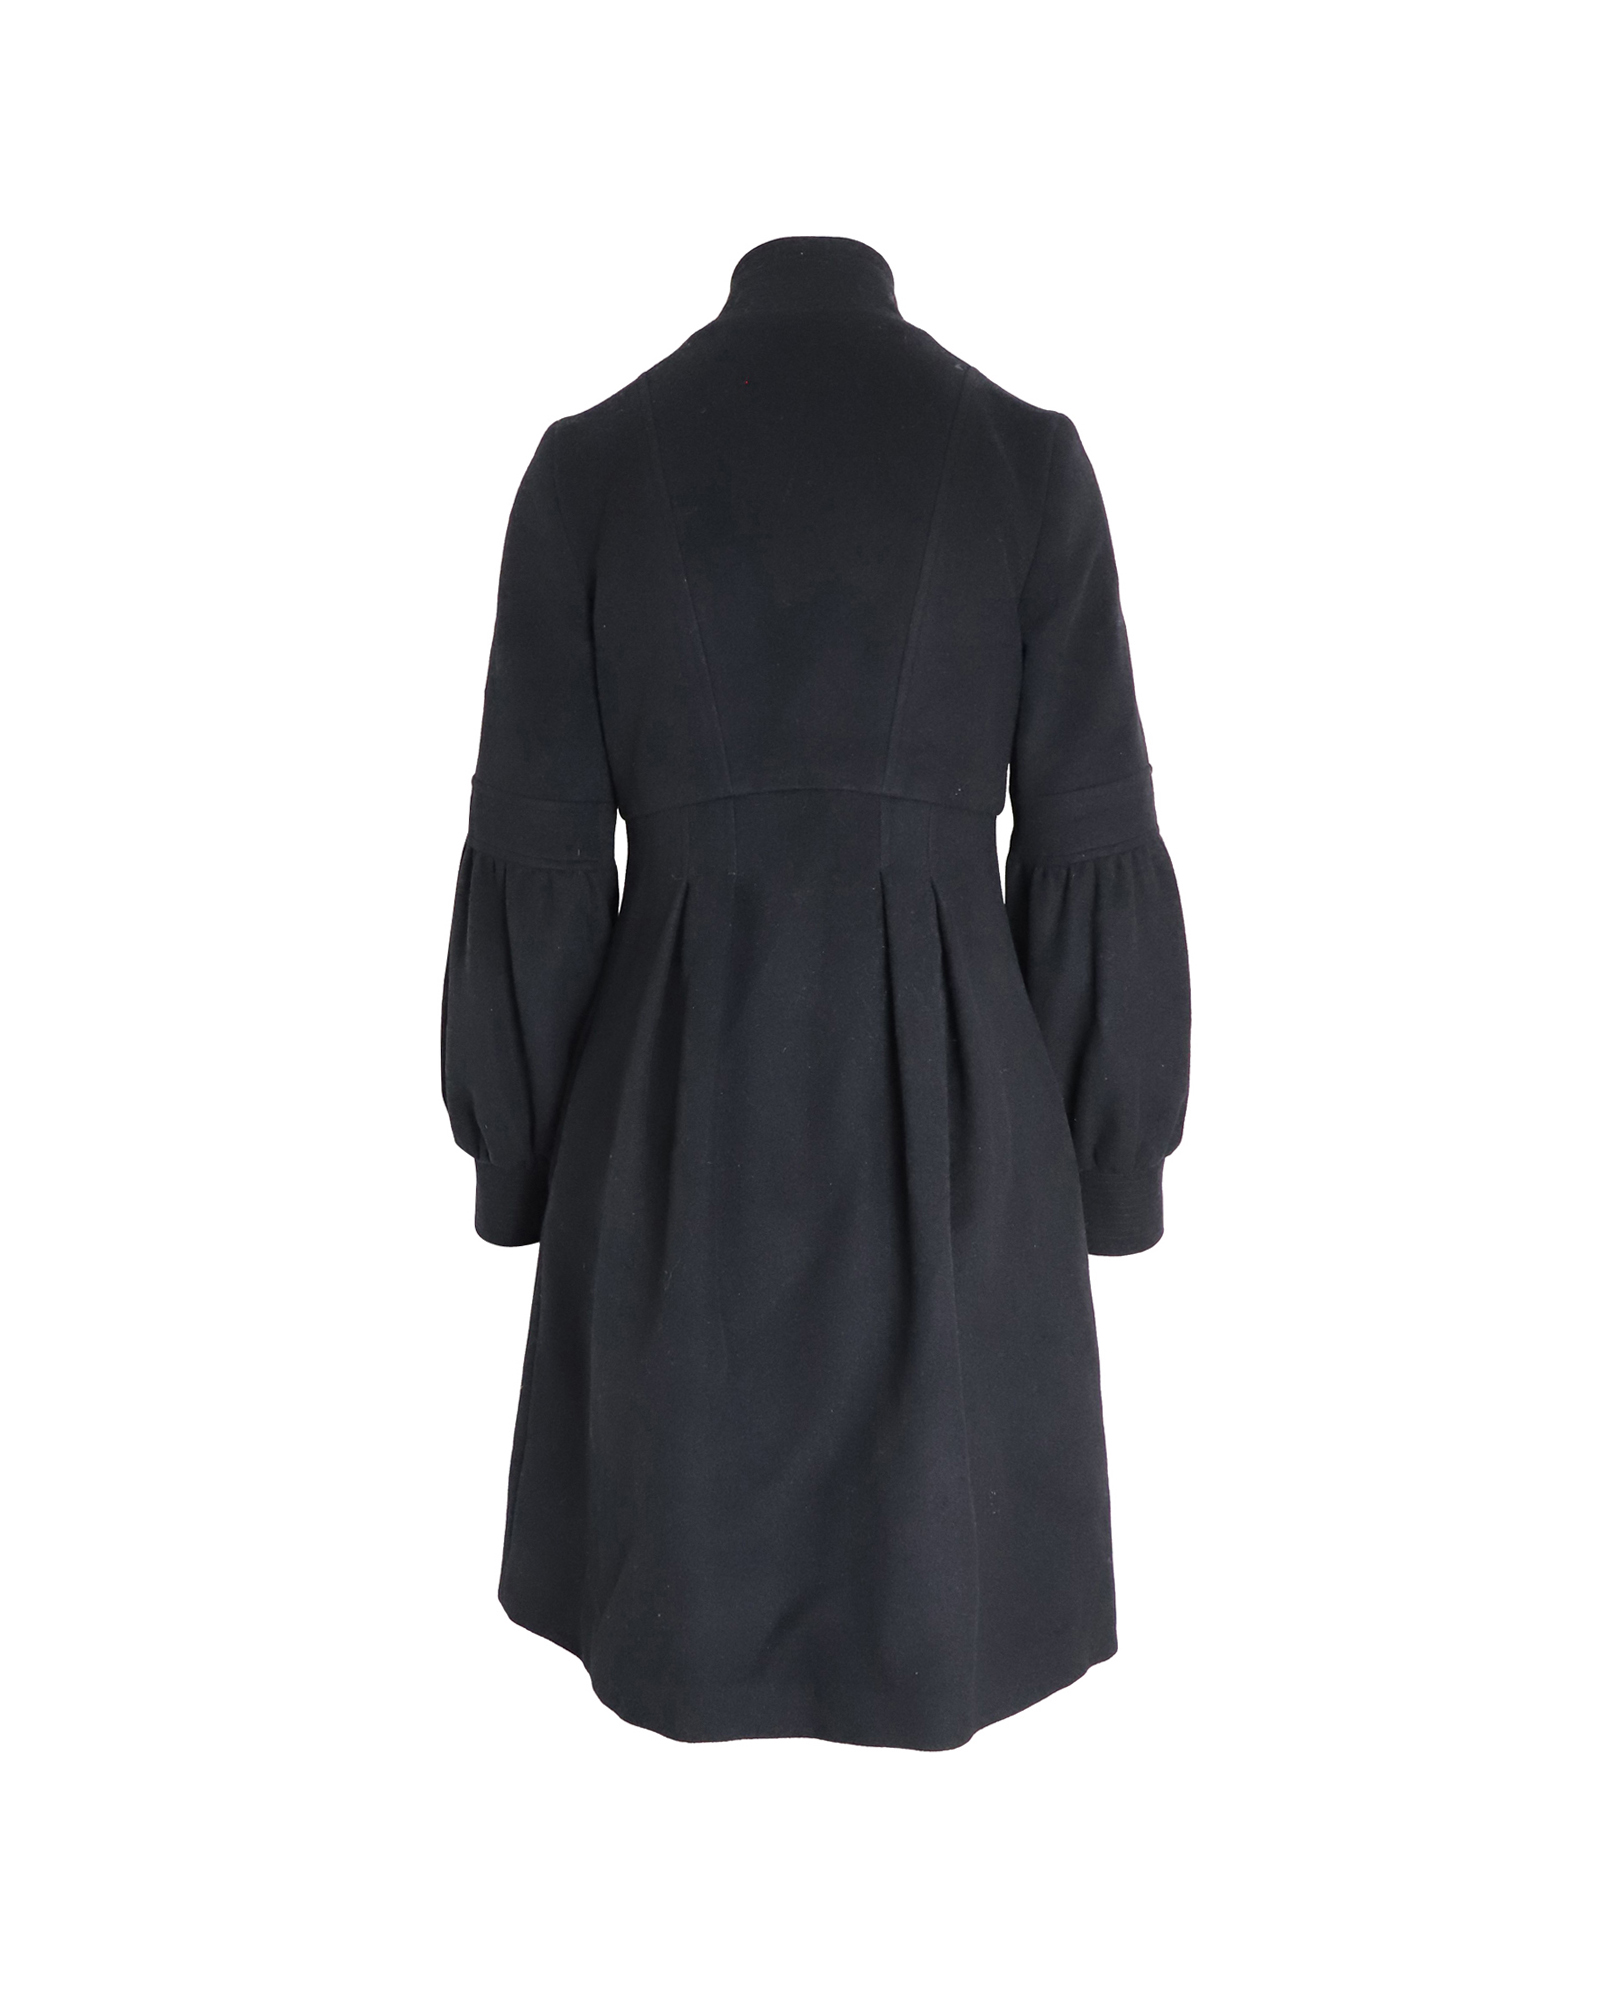 Classic Black Wool Dress Coat